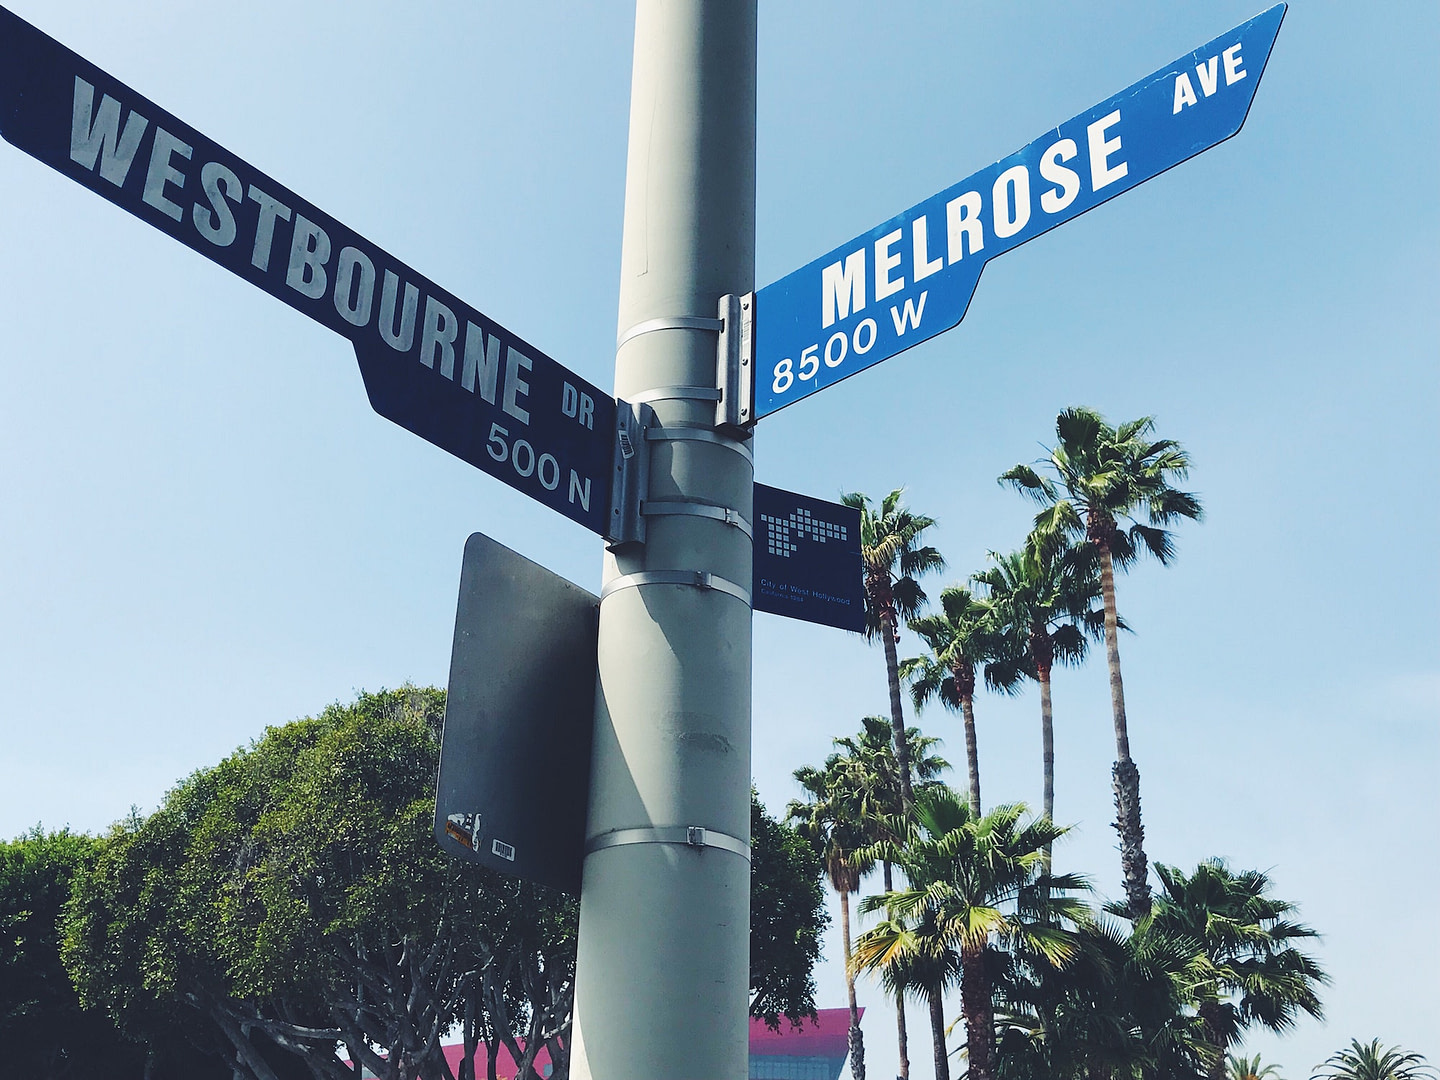 Street signs in Los Angeles